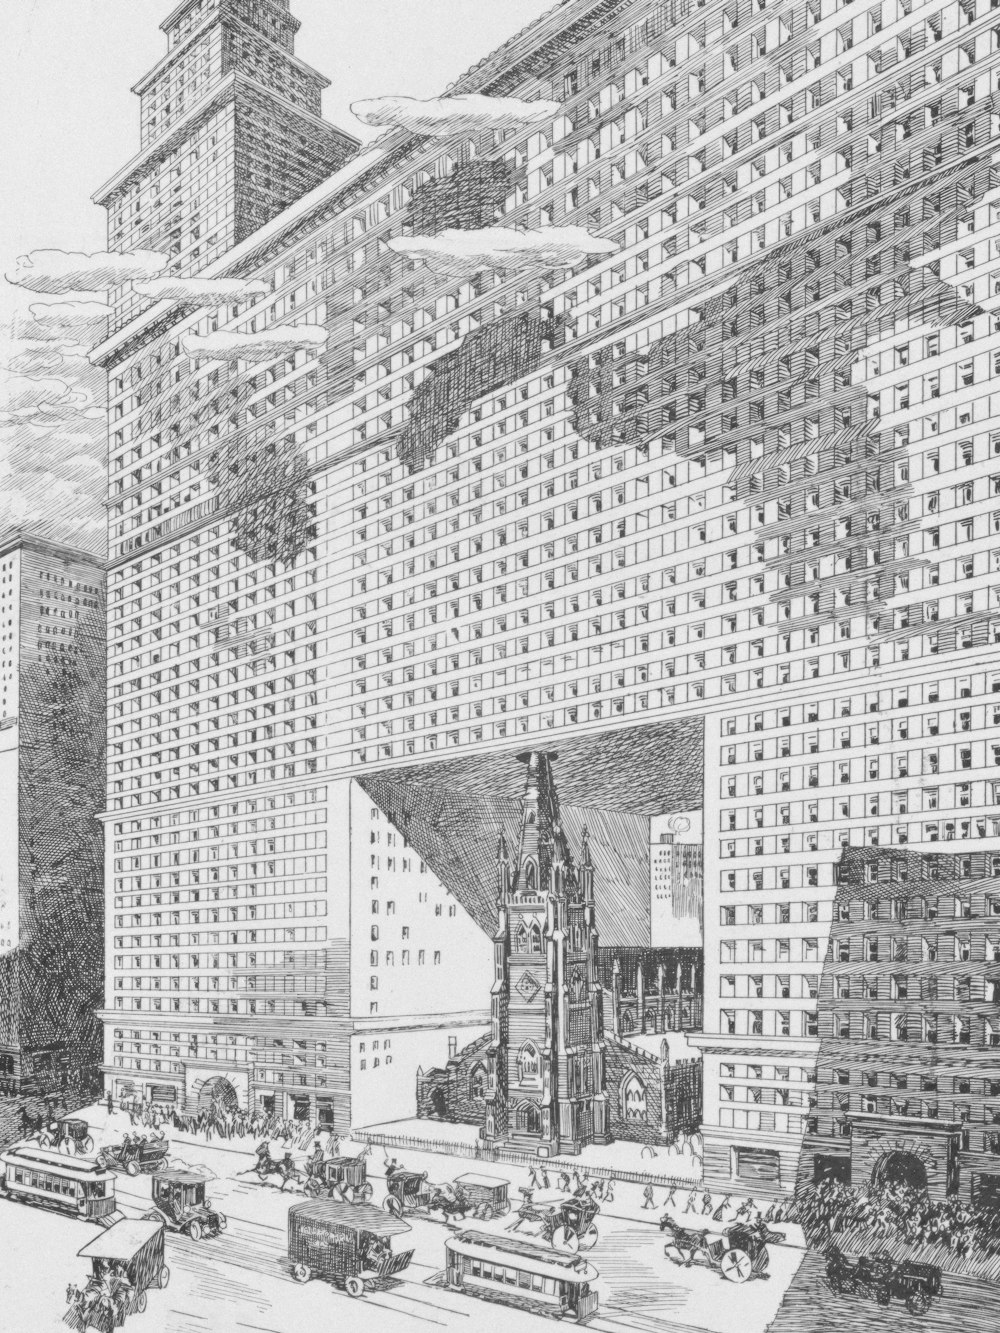 Die Zukunft der Dreifaltigkeitskirche / Albert Levering. Zusammenfassung Die Illustration zeigt die Trinity Church in New York City, die vollständig von einem massiven Gebäude verschlungen wird, auch über dem Kirchturm und dem Dach